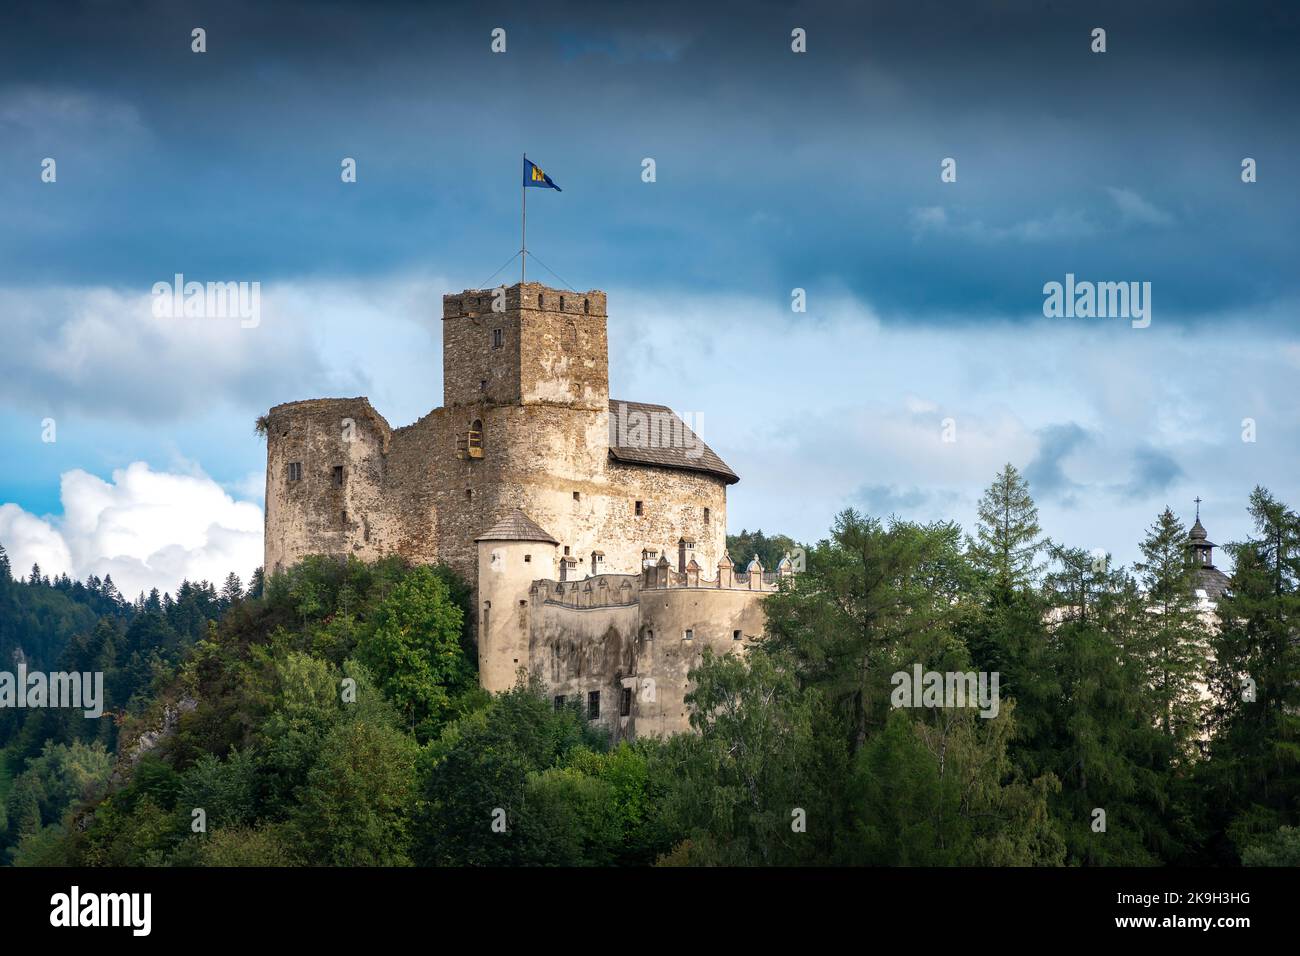 Château médiéval de Niedzica, Pologne. Fortification du XIVe siècle située en haut de la colline à la frontière du Parc National de Pieniny. Forteresse de la capitule Banque D'Images